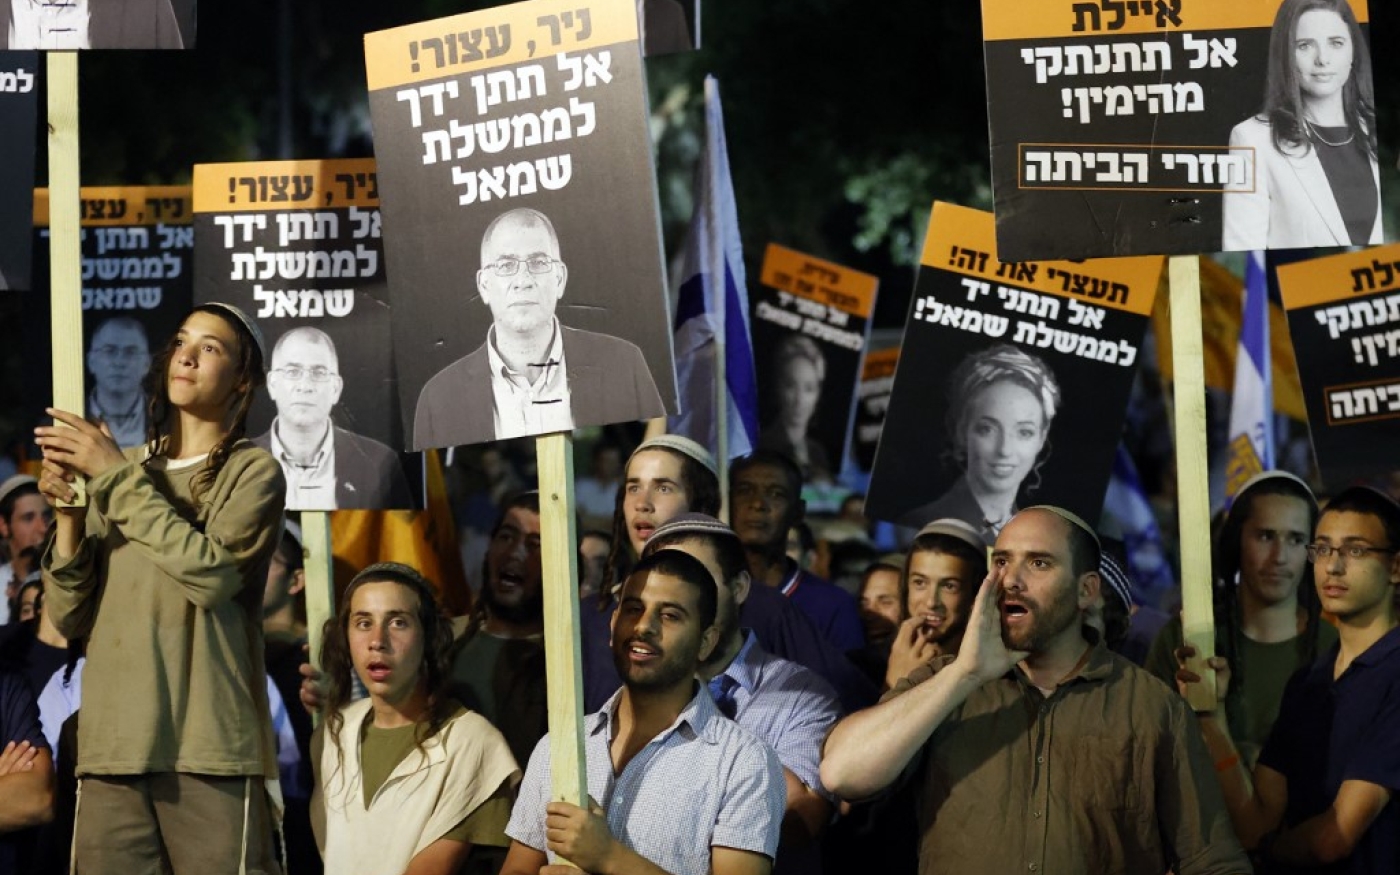 Des partisans de Benyamin Netanyahou lors d’une manifestation contre la coalition pour former un gouvernement, à Tel Aviv, le 3 juin 2021 (AFP/Jack Guez)